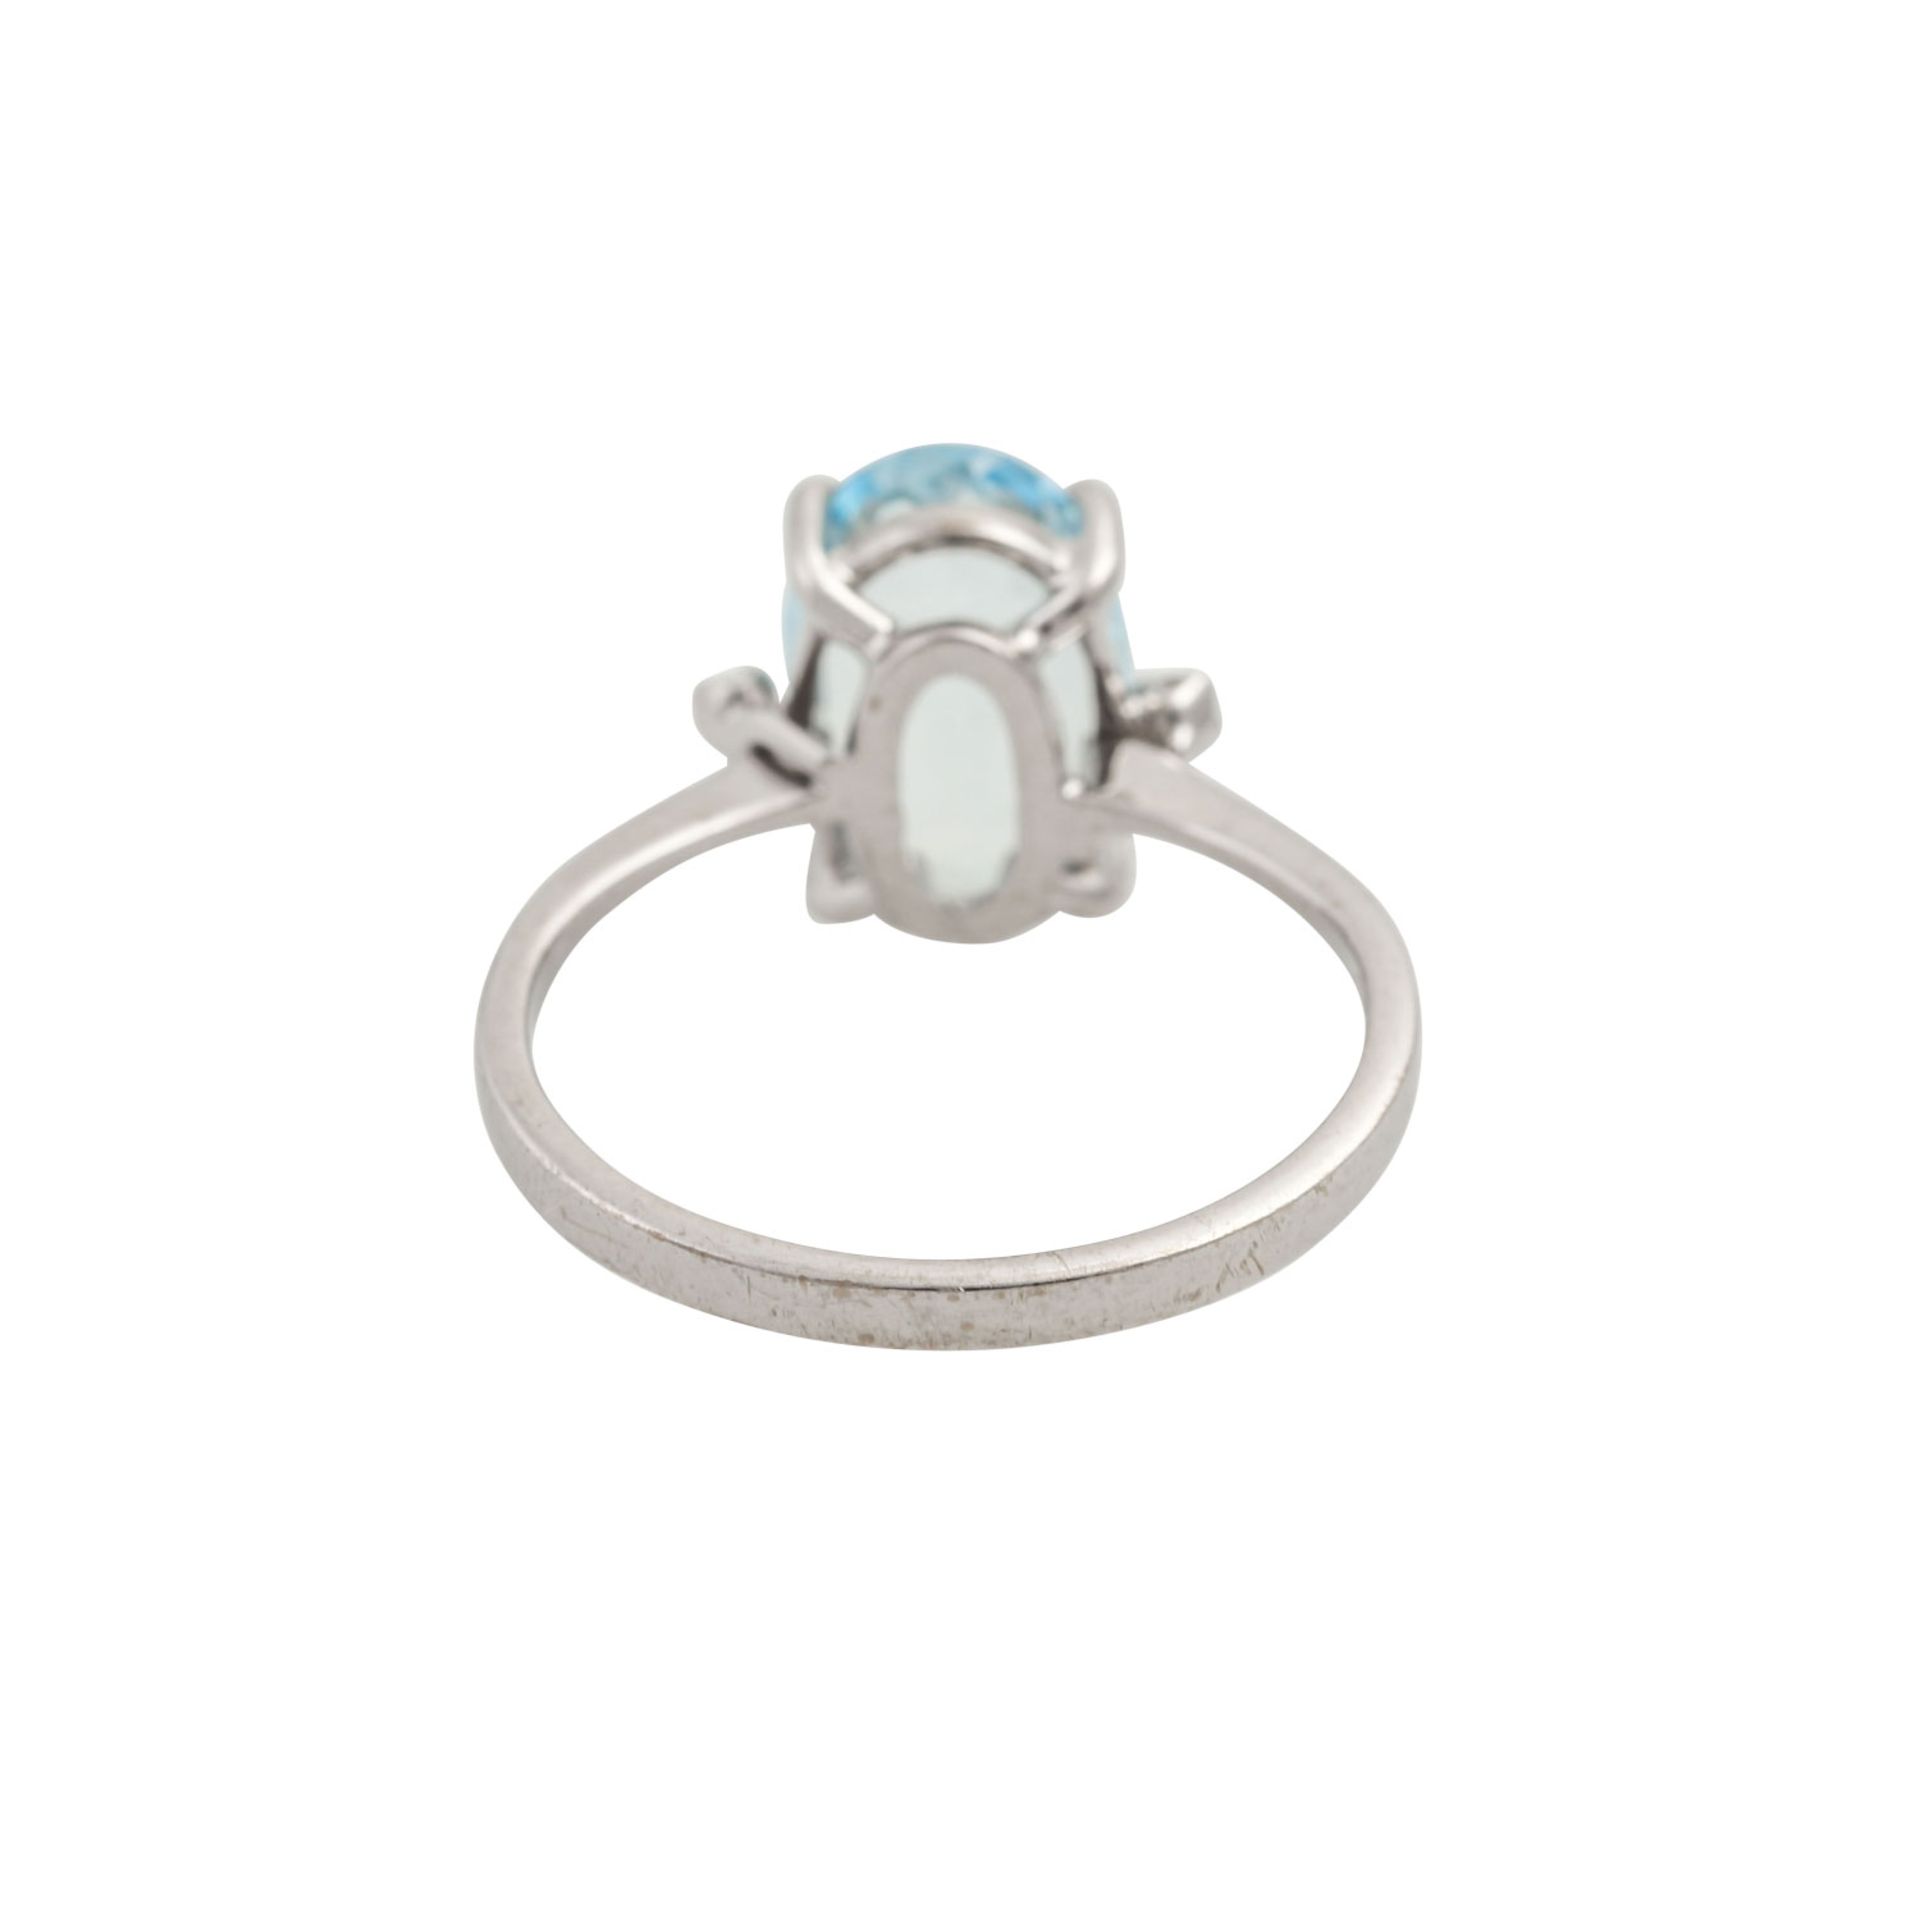 Ring mit oval facettiertem Aquamarin und 2 Achtkantdiamanten, WG 18K, 3,2 g, RW: 55, 2 - Image 4 of 4